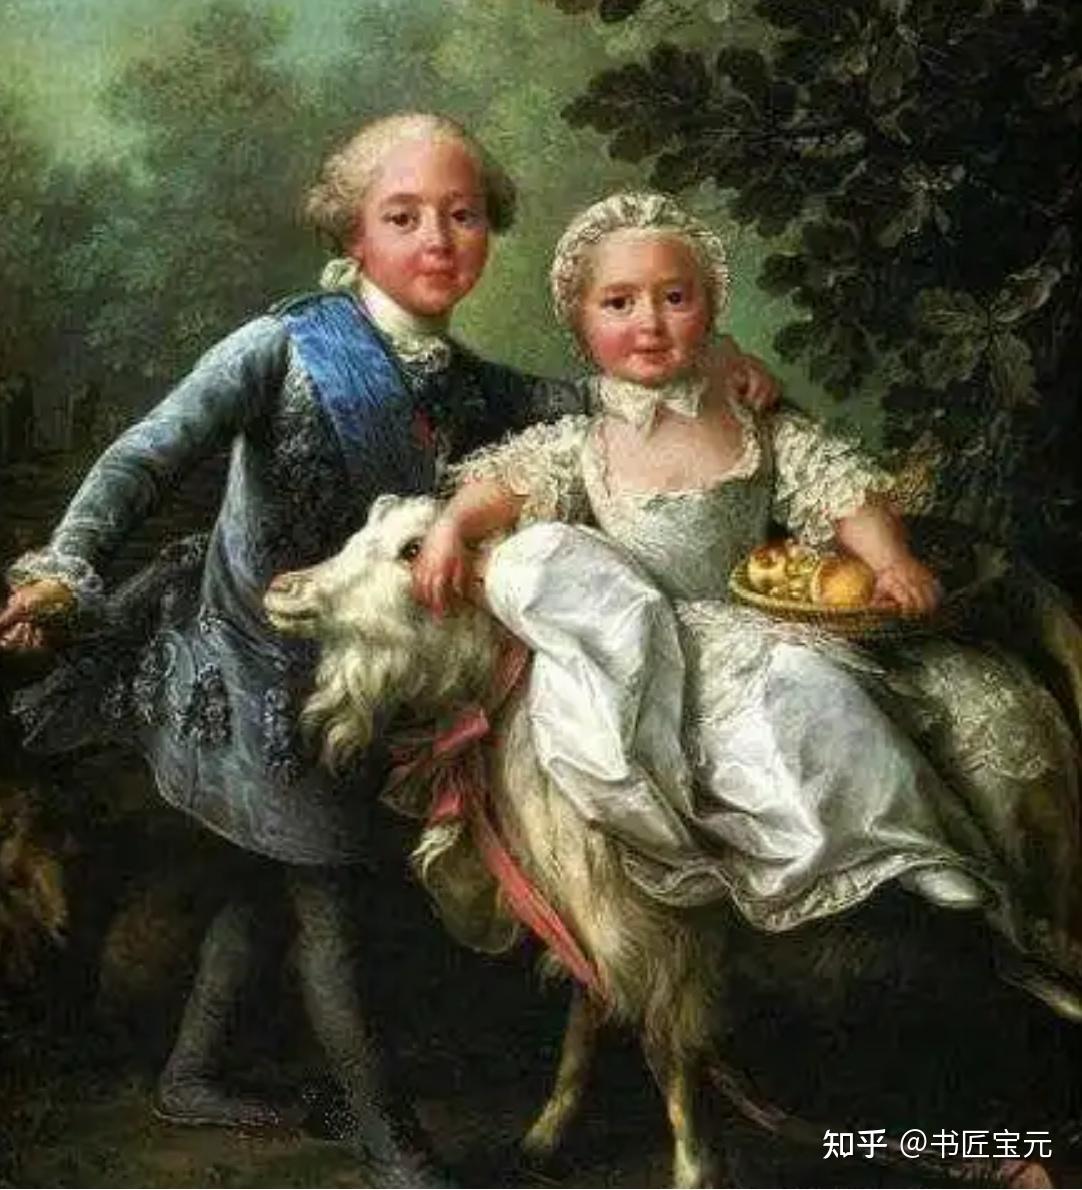 1757~1836),法国波旁王朝复辟后的第二位国王,为喜爱者路易十五之孙